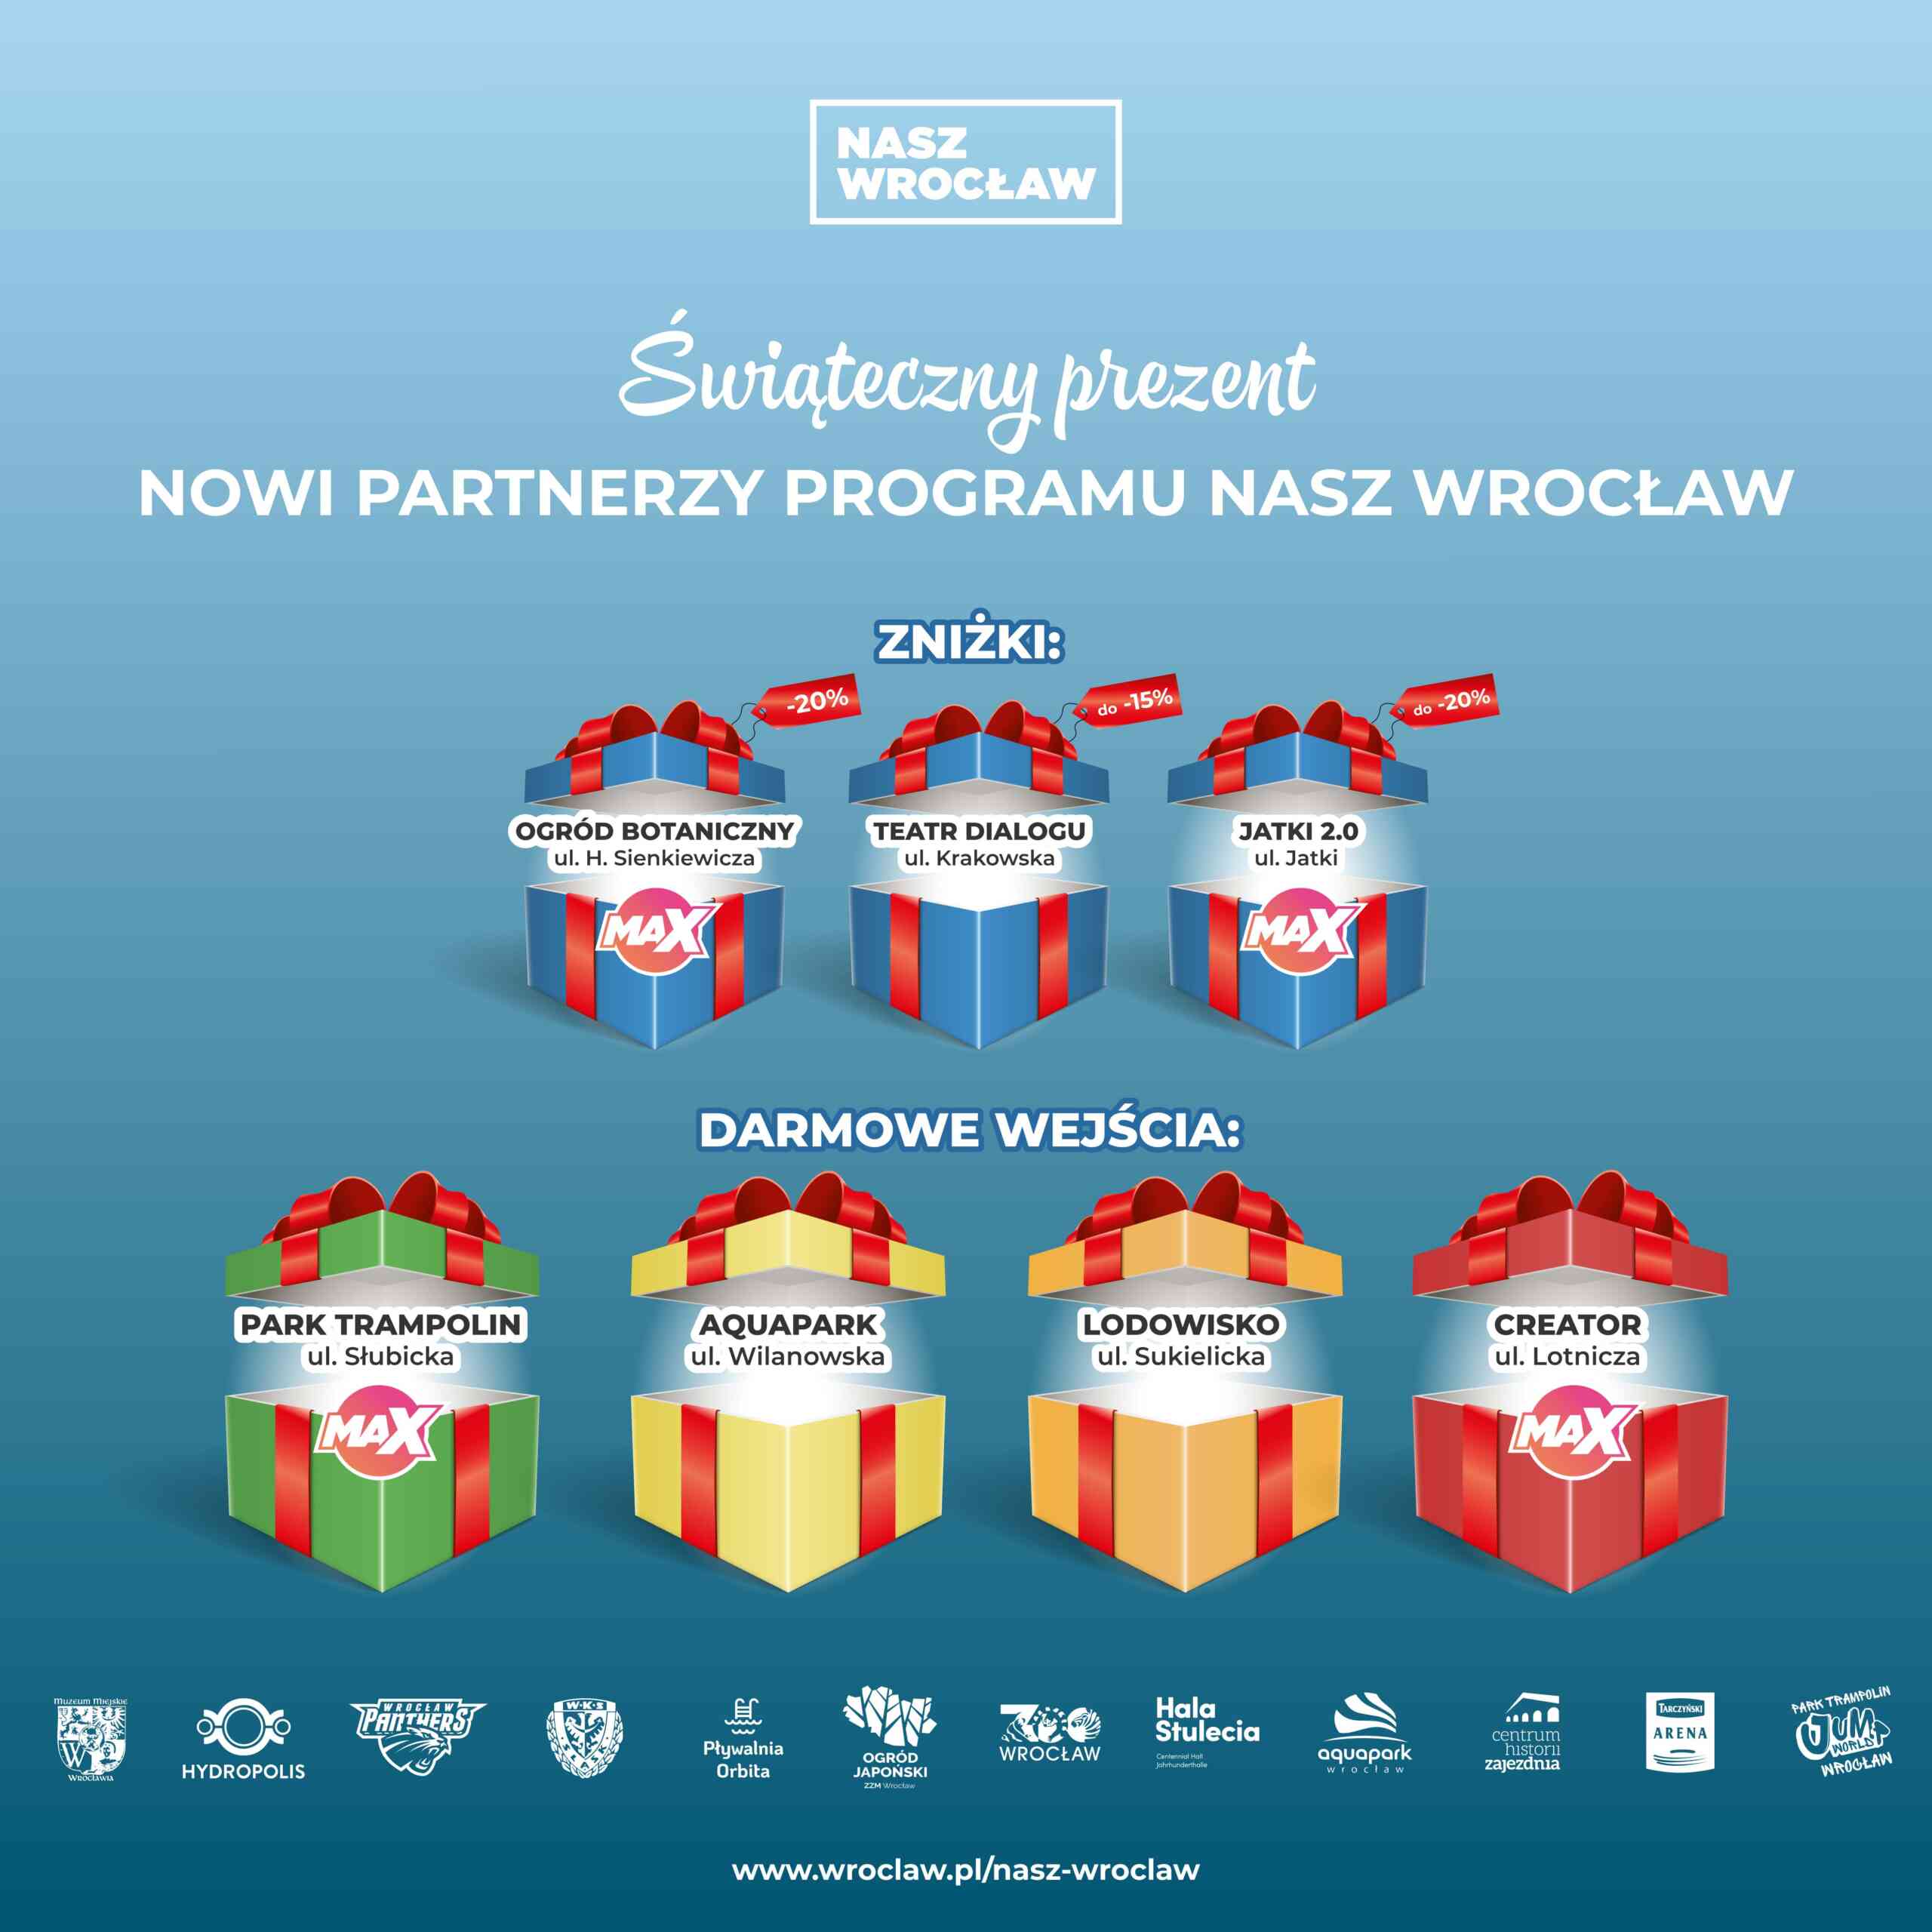 NaszWrocław – Świąteczne prezenty! Nowi partnerzy i darmowe wejścia!